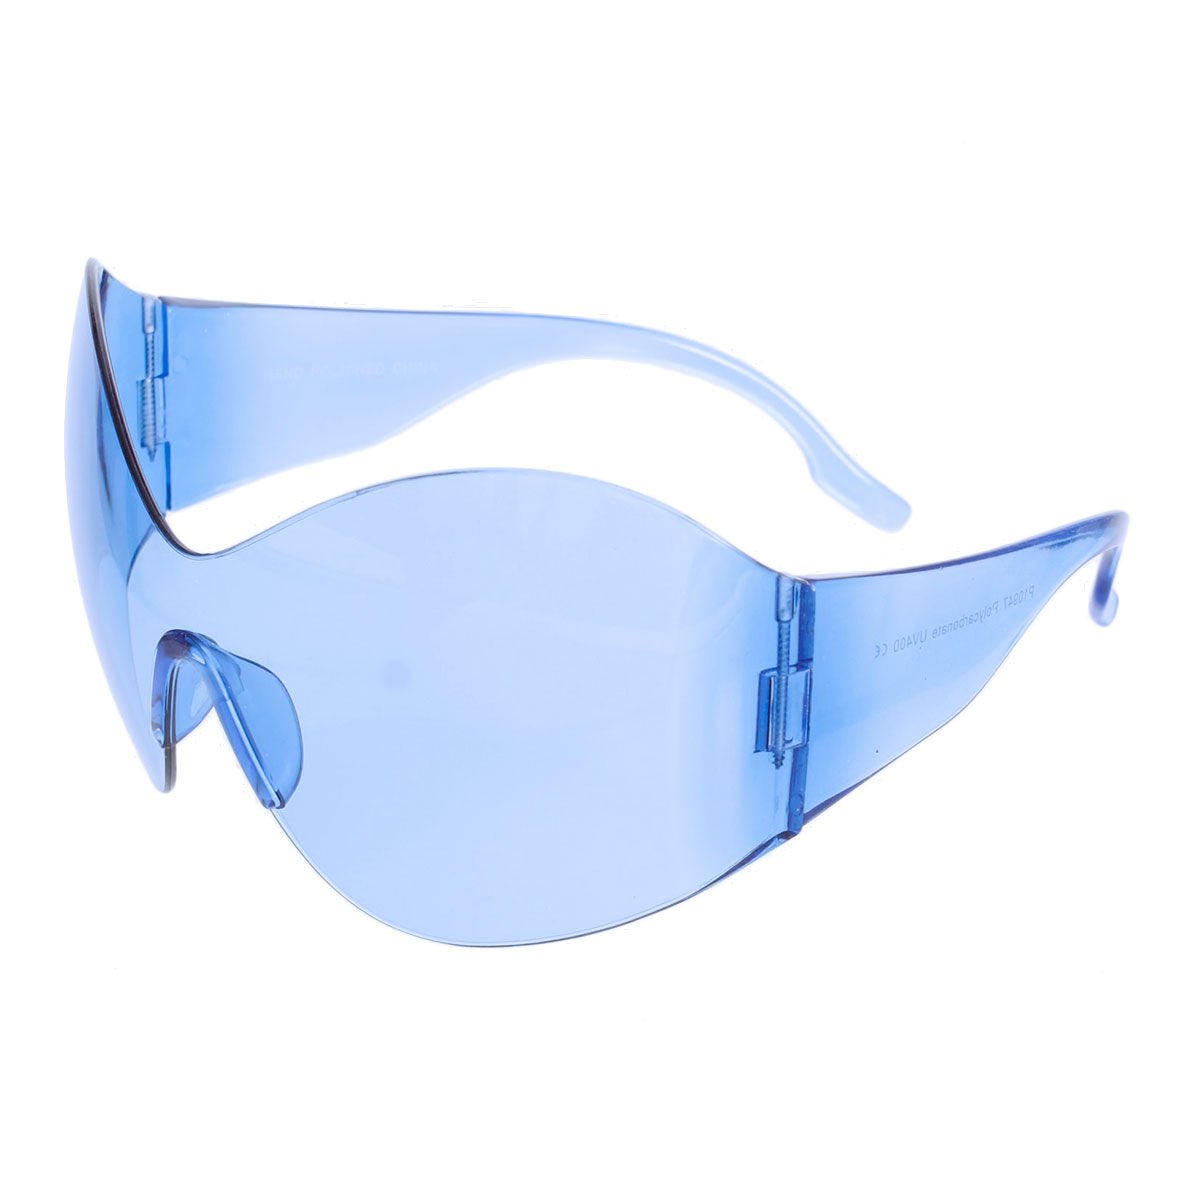 Sunglasses Butterfly Mask Blue Eyewear for Women - Bae Apparel